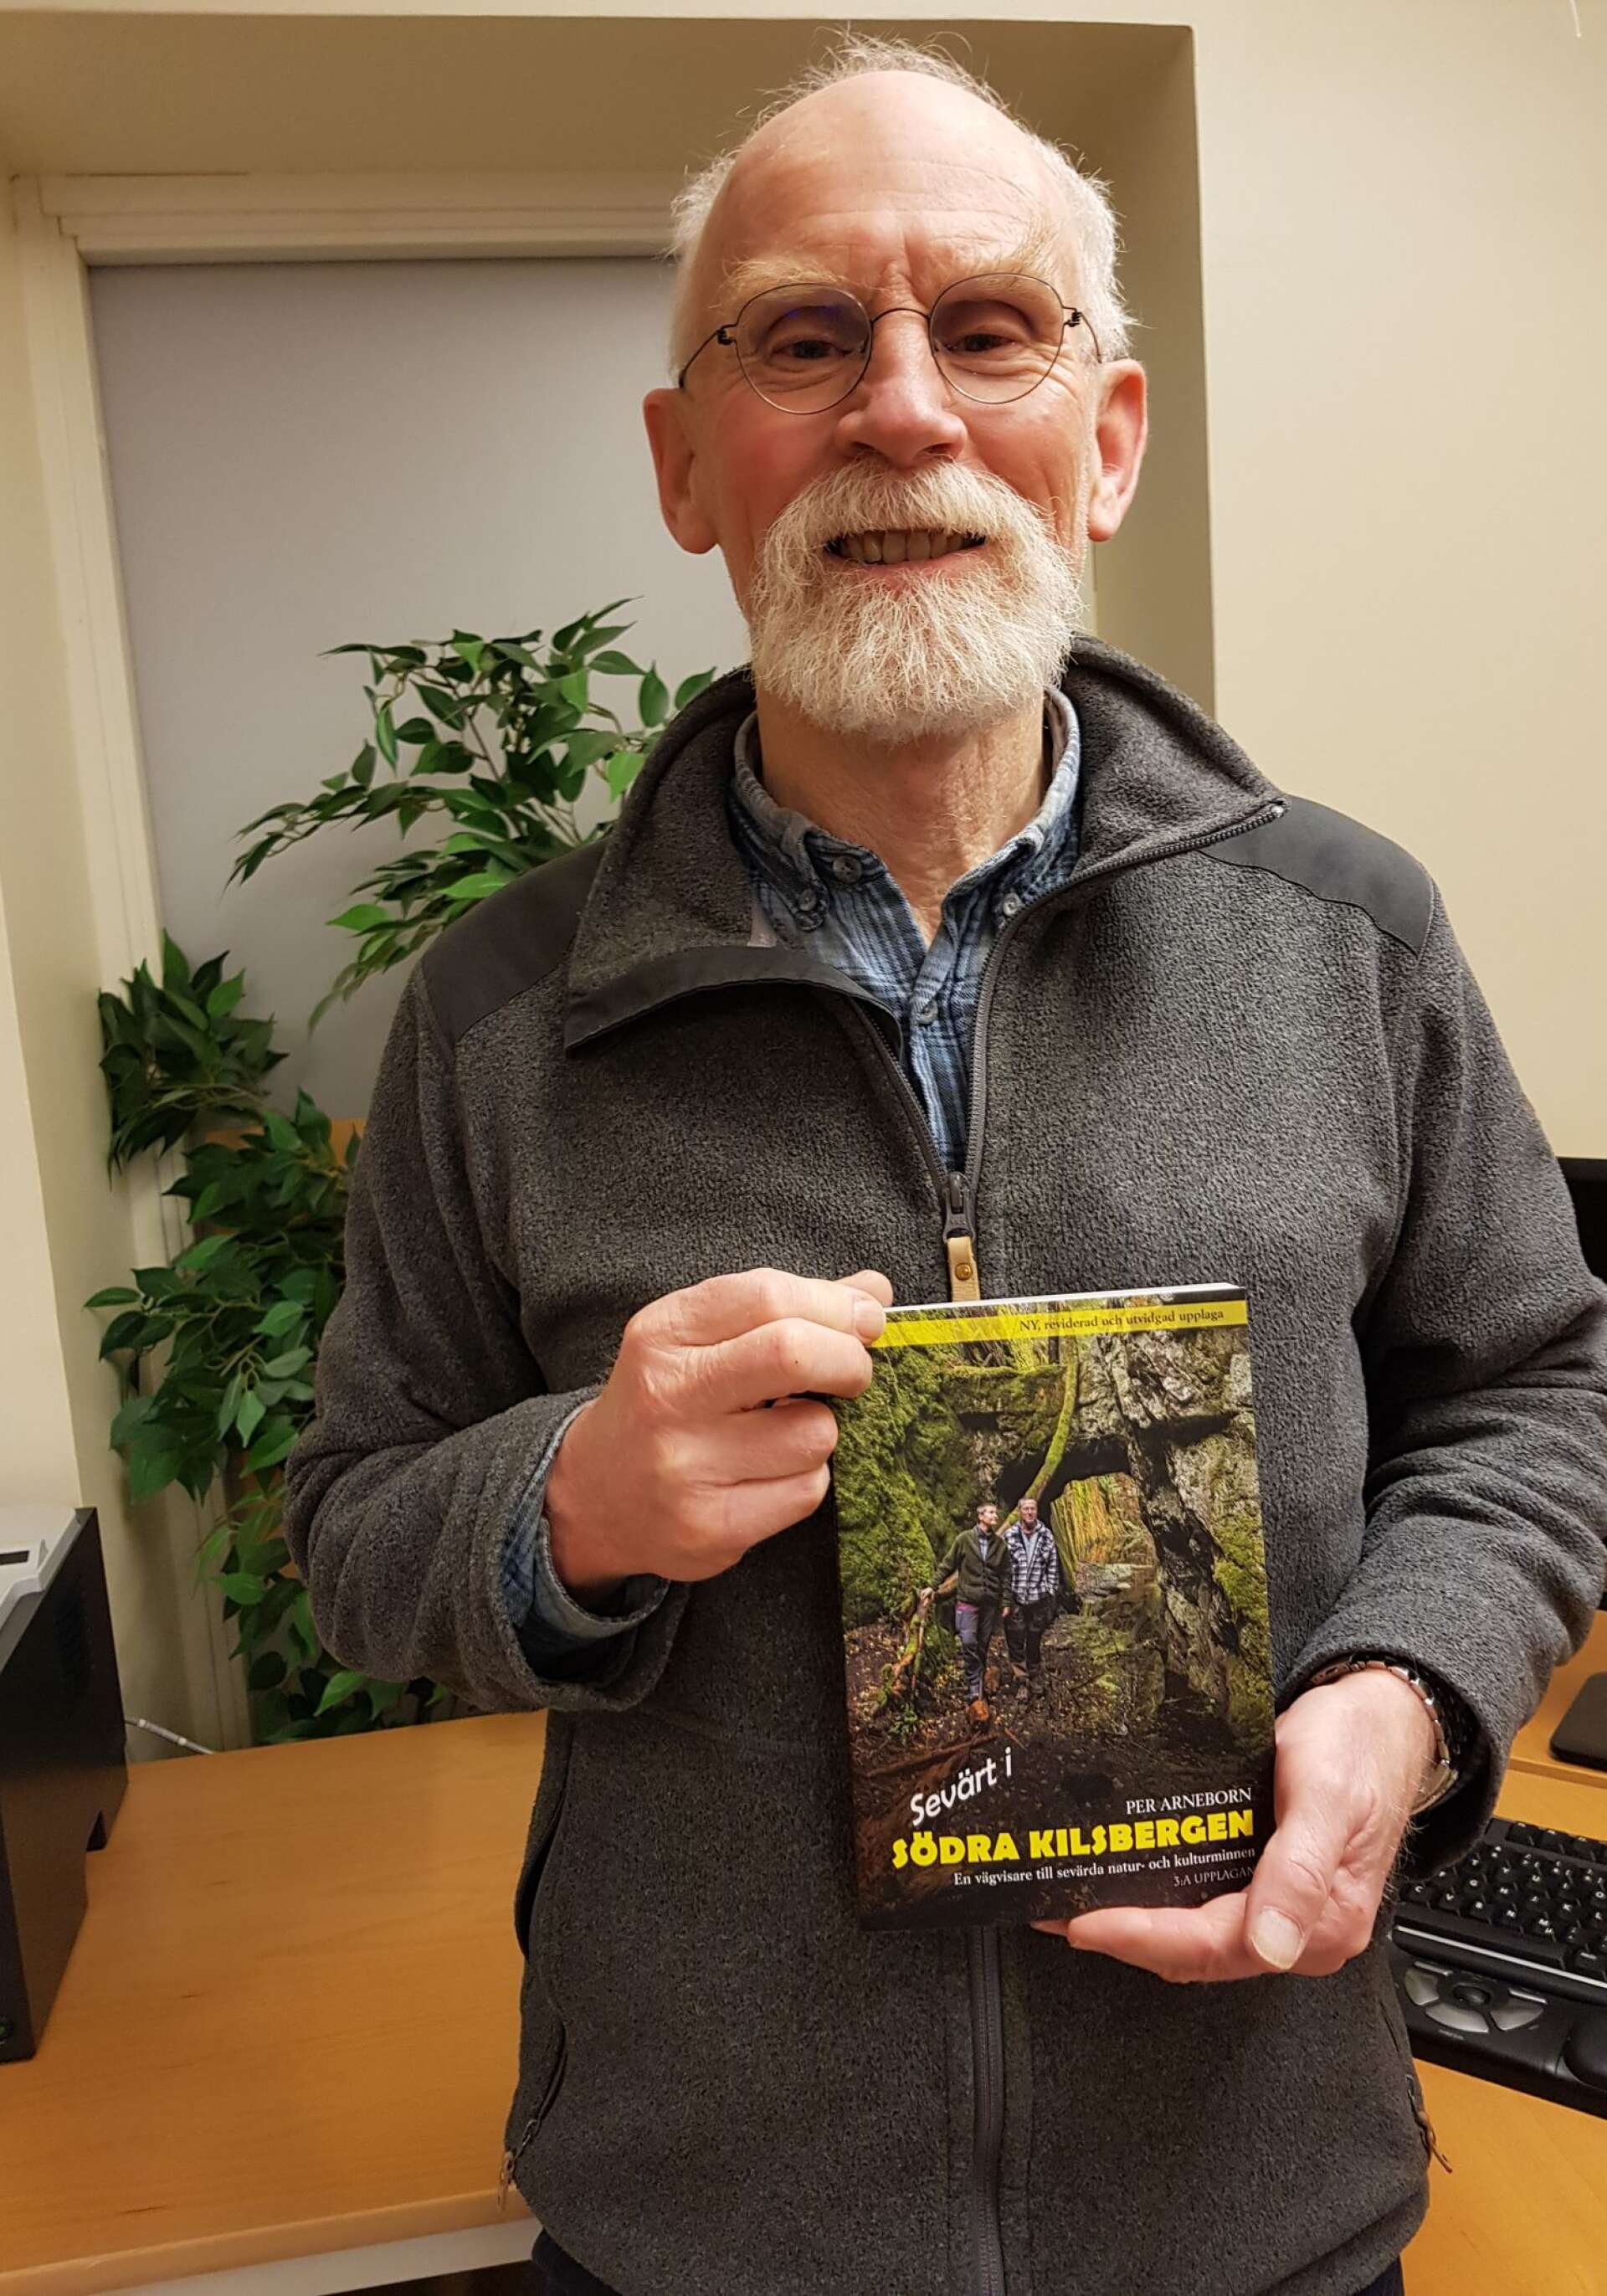 Per Arneborn har skrivit en bok om sevärdheter i södra Kilsbergen.